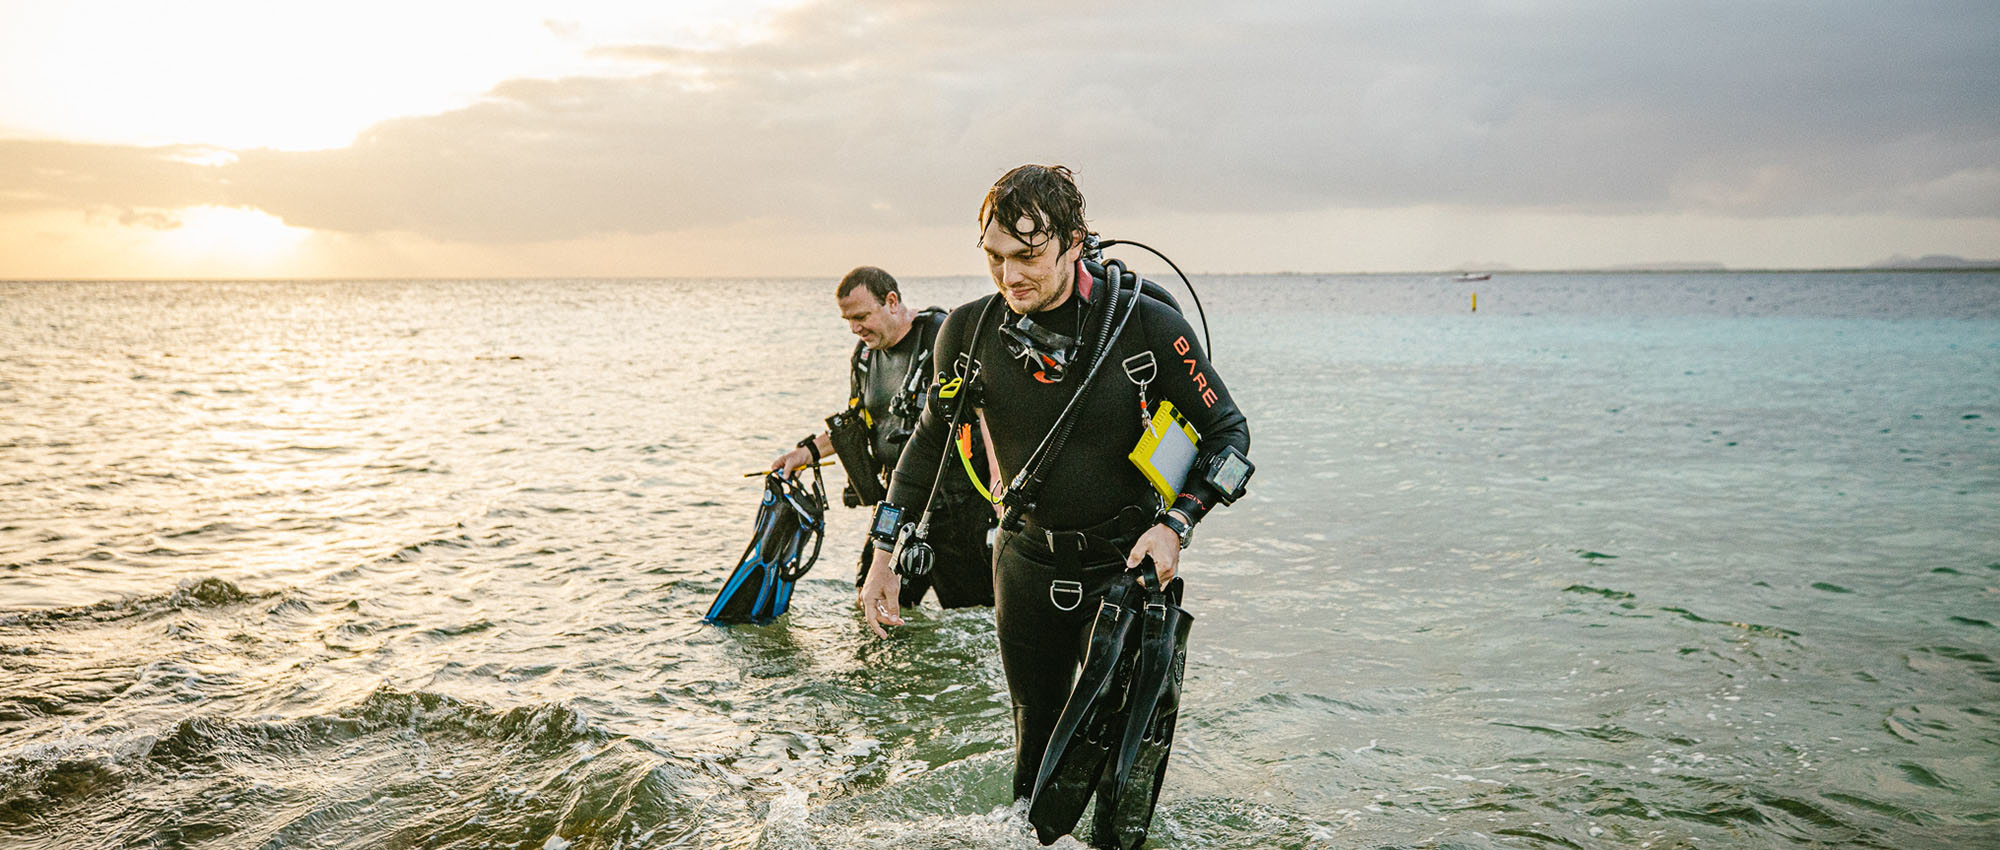 Twee mannen in duikuitrusting komen uit het water